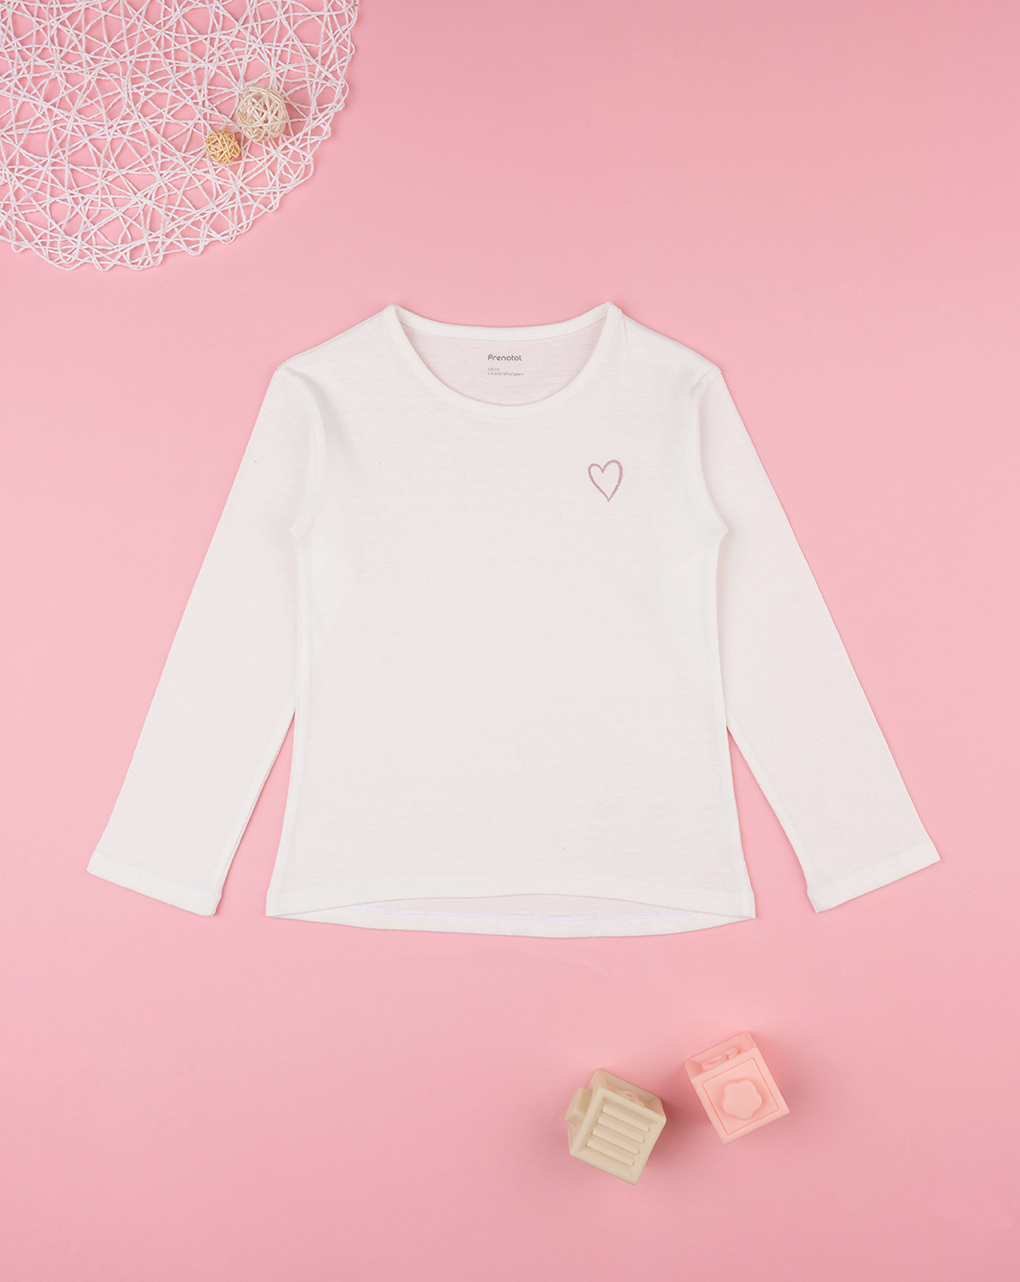 παιδική μπλούζα λευκή με καρδούλα για κορίτσι - Prénatal